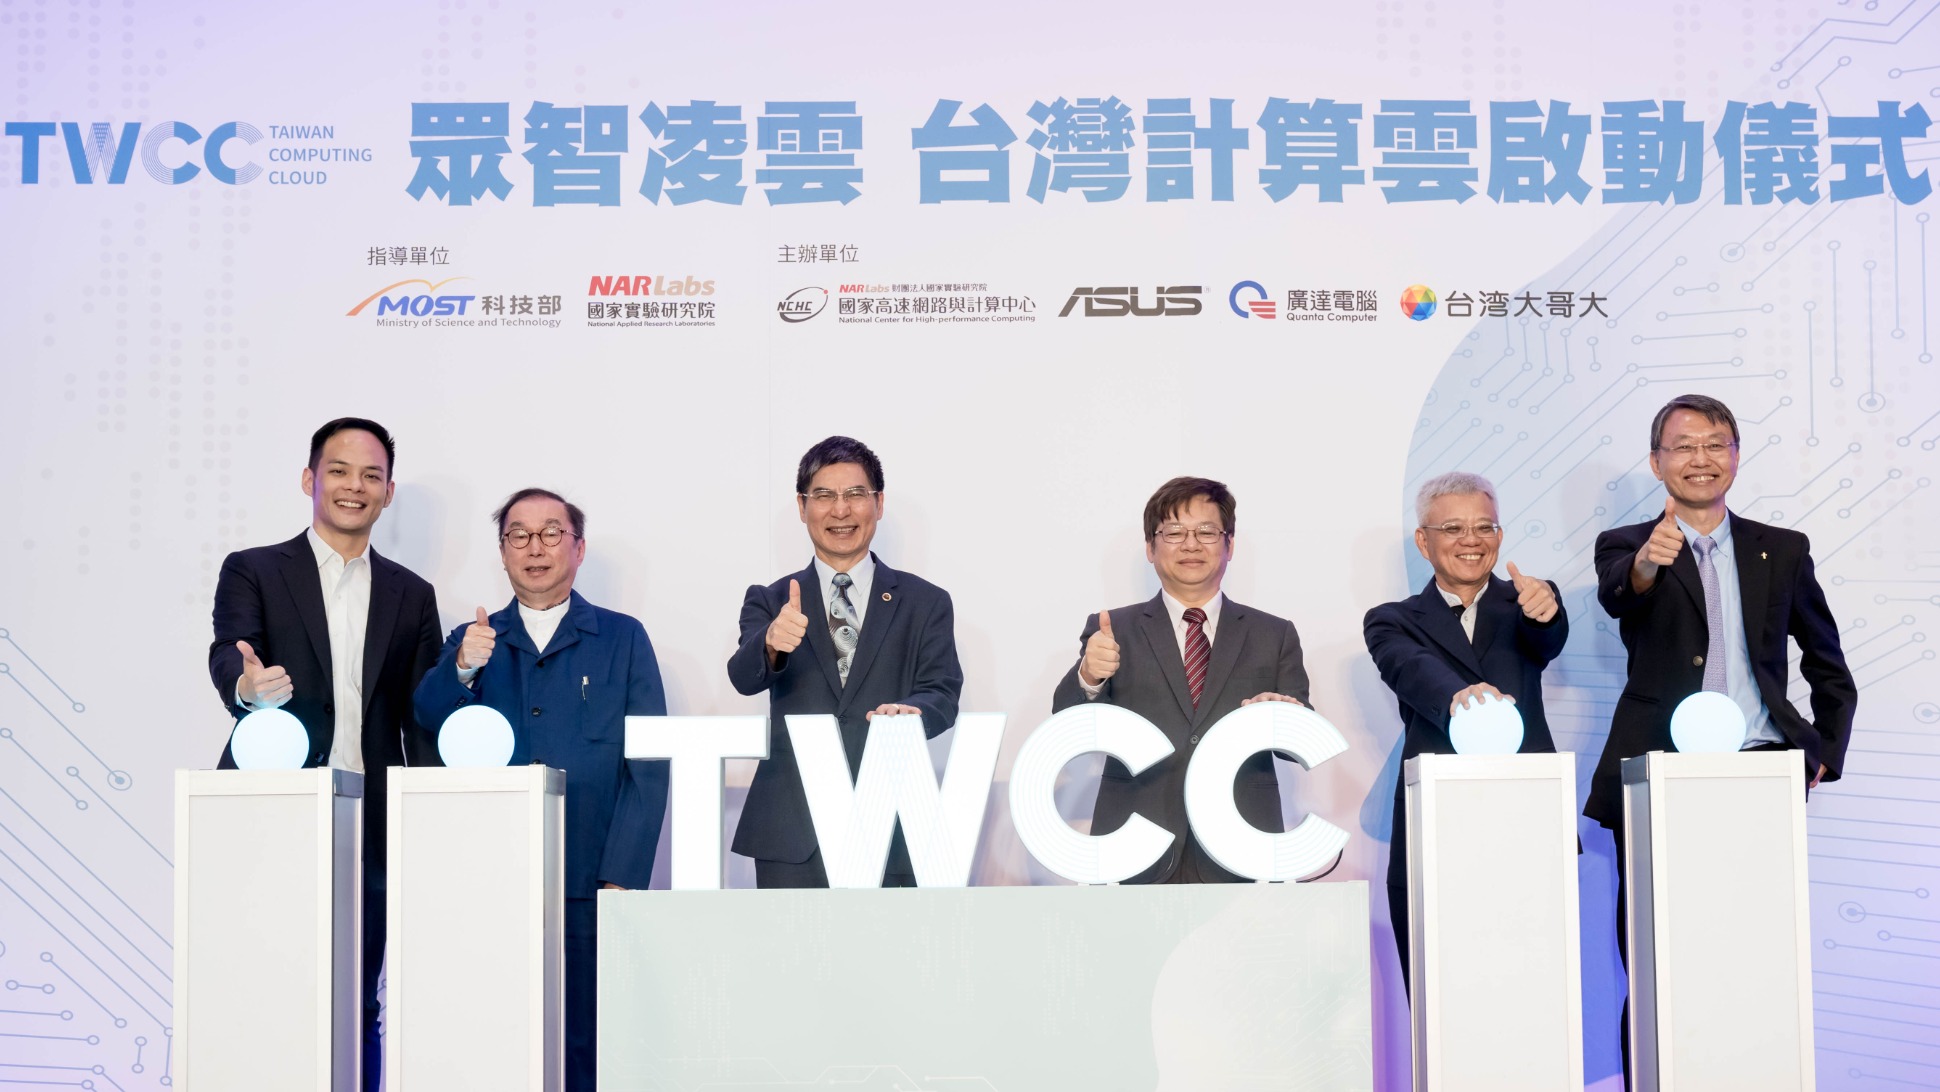 台灣計算雲正式啟用TWCC揭牌啟動